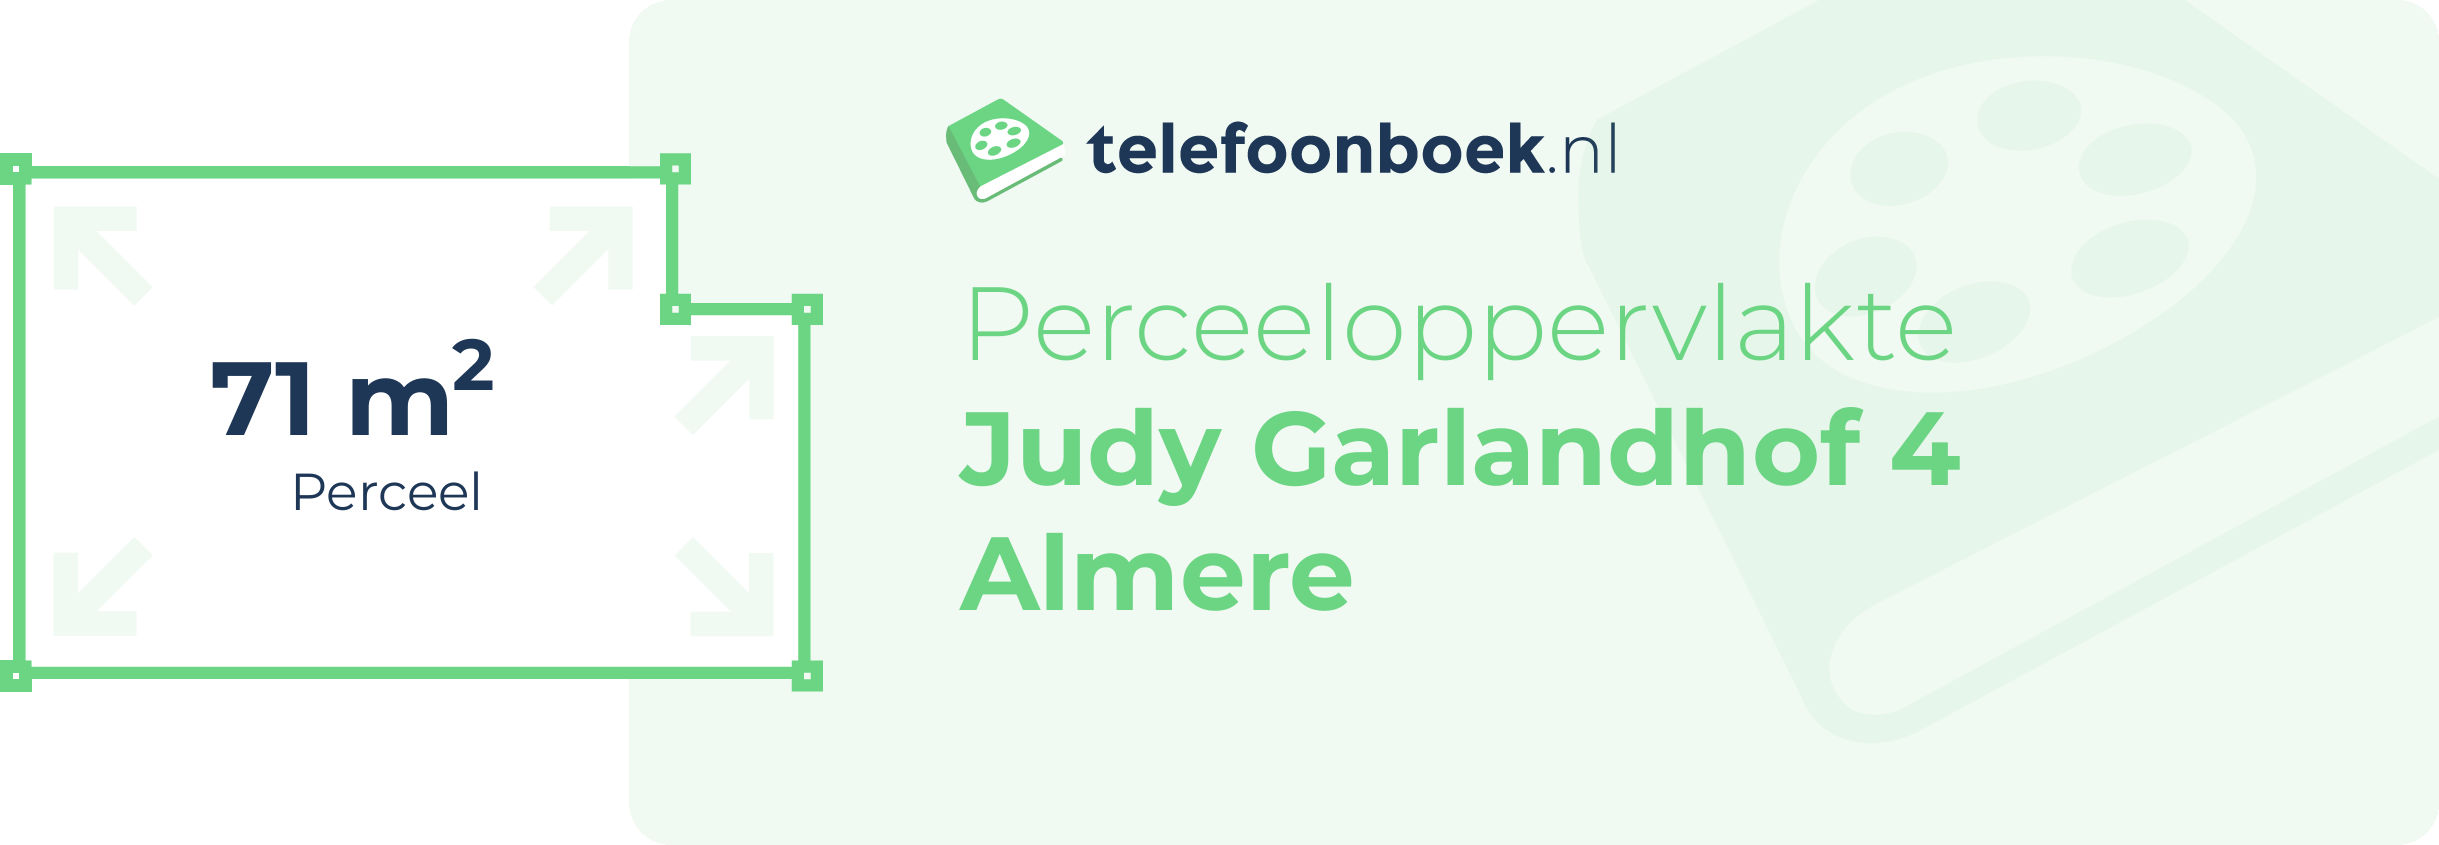 Perceeloppervlakte Judy Garlandhof 4 Almere